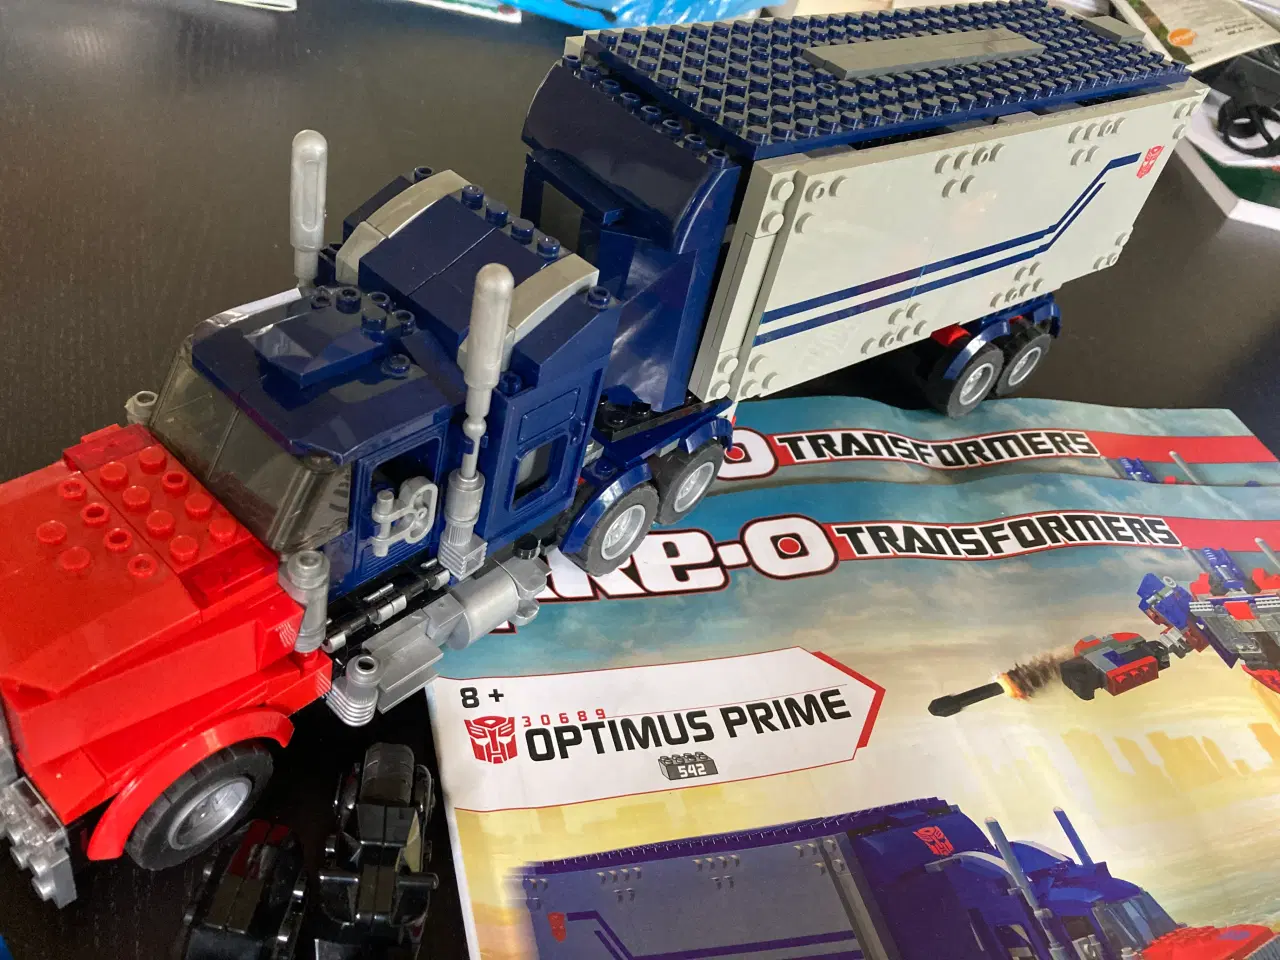 Billede 1 - Billigt “Lego” Kre-o transformers fed lastbil